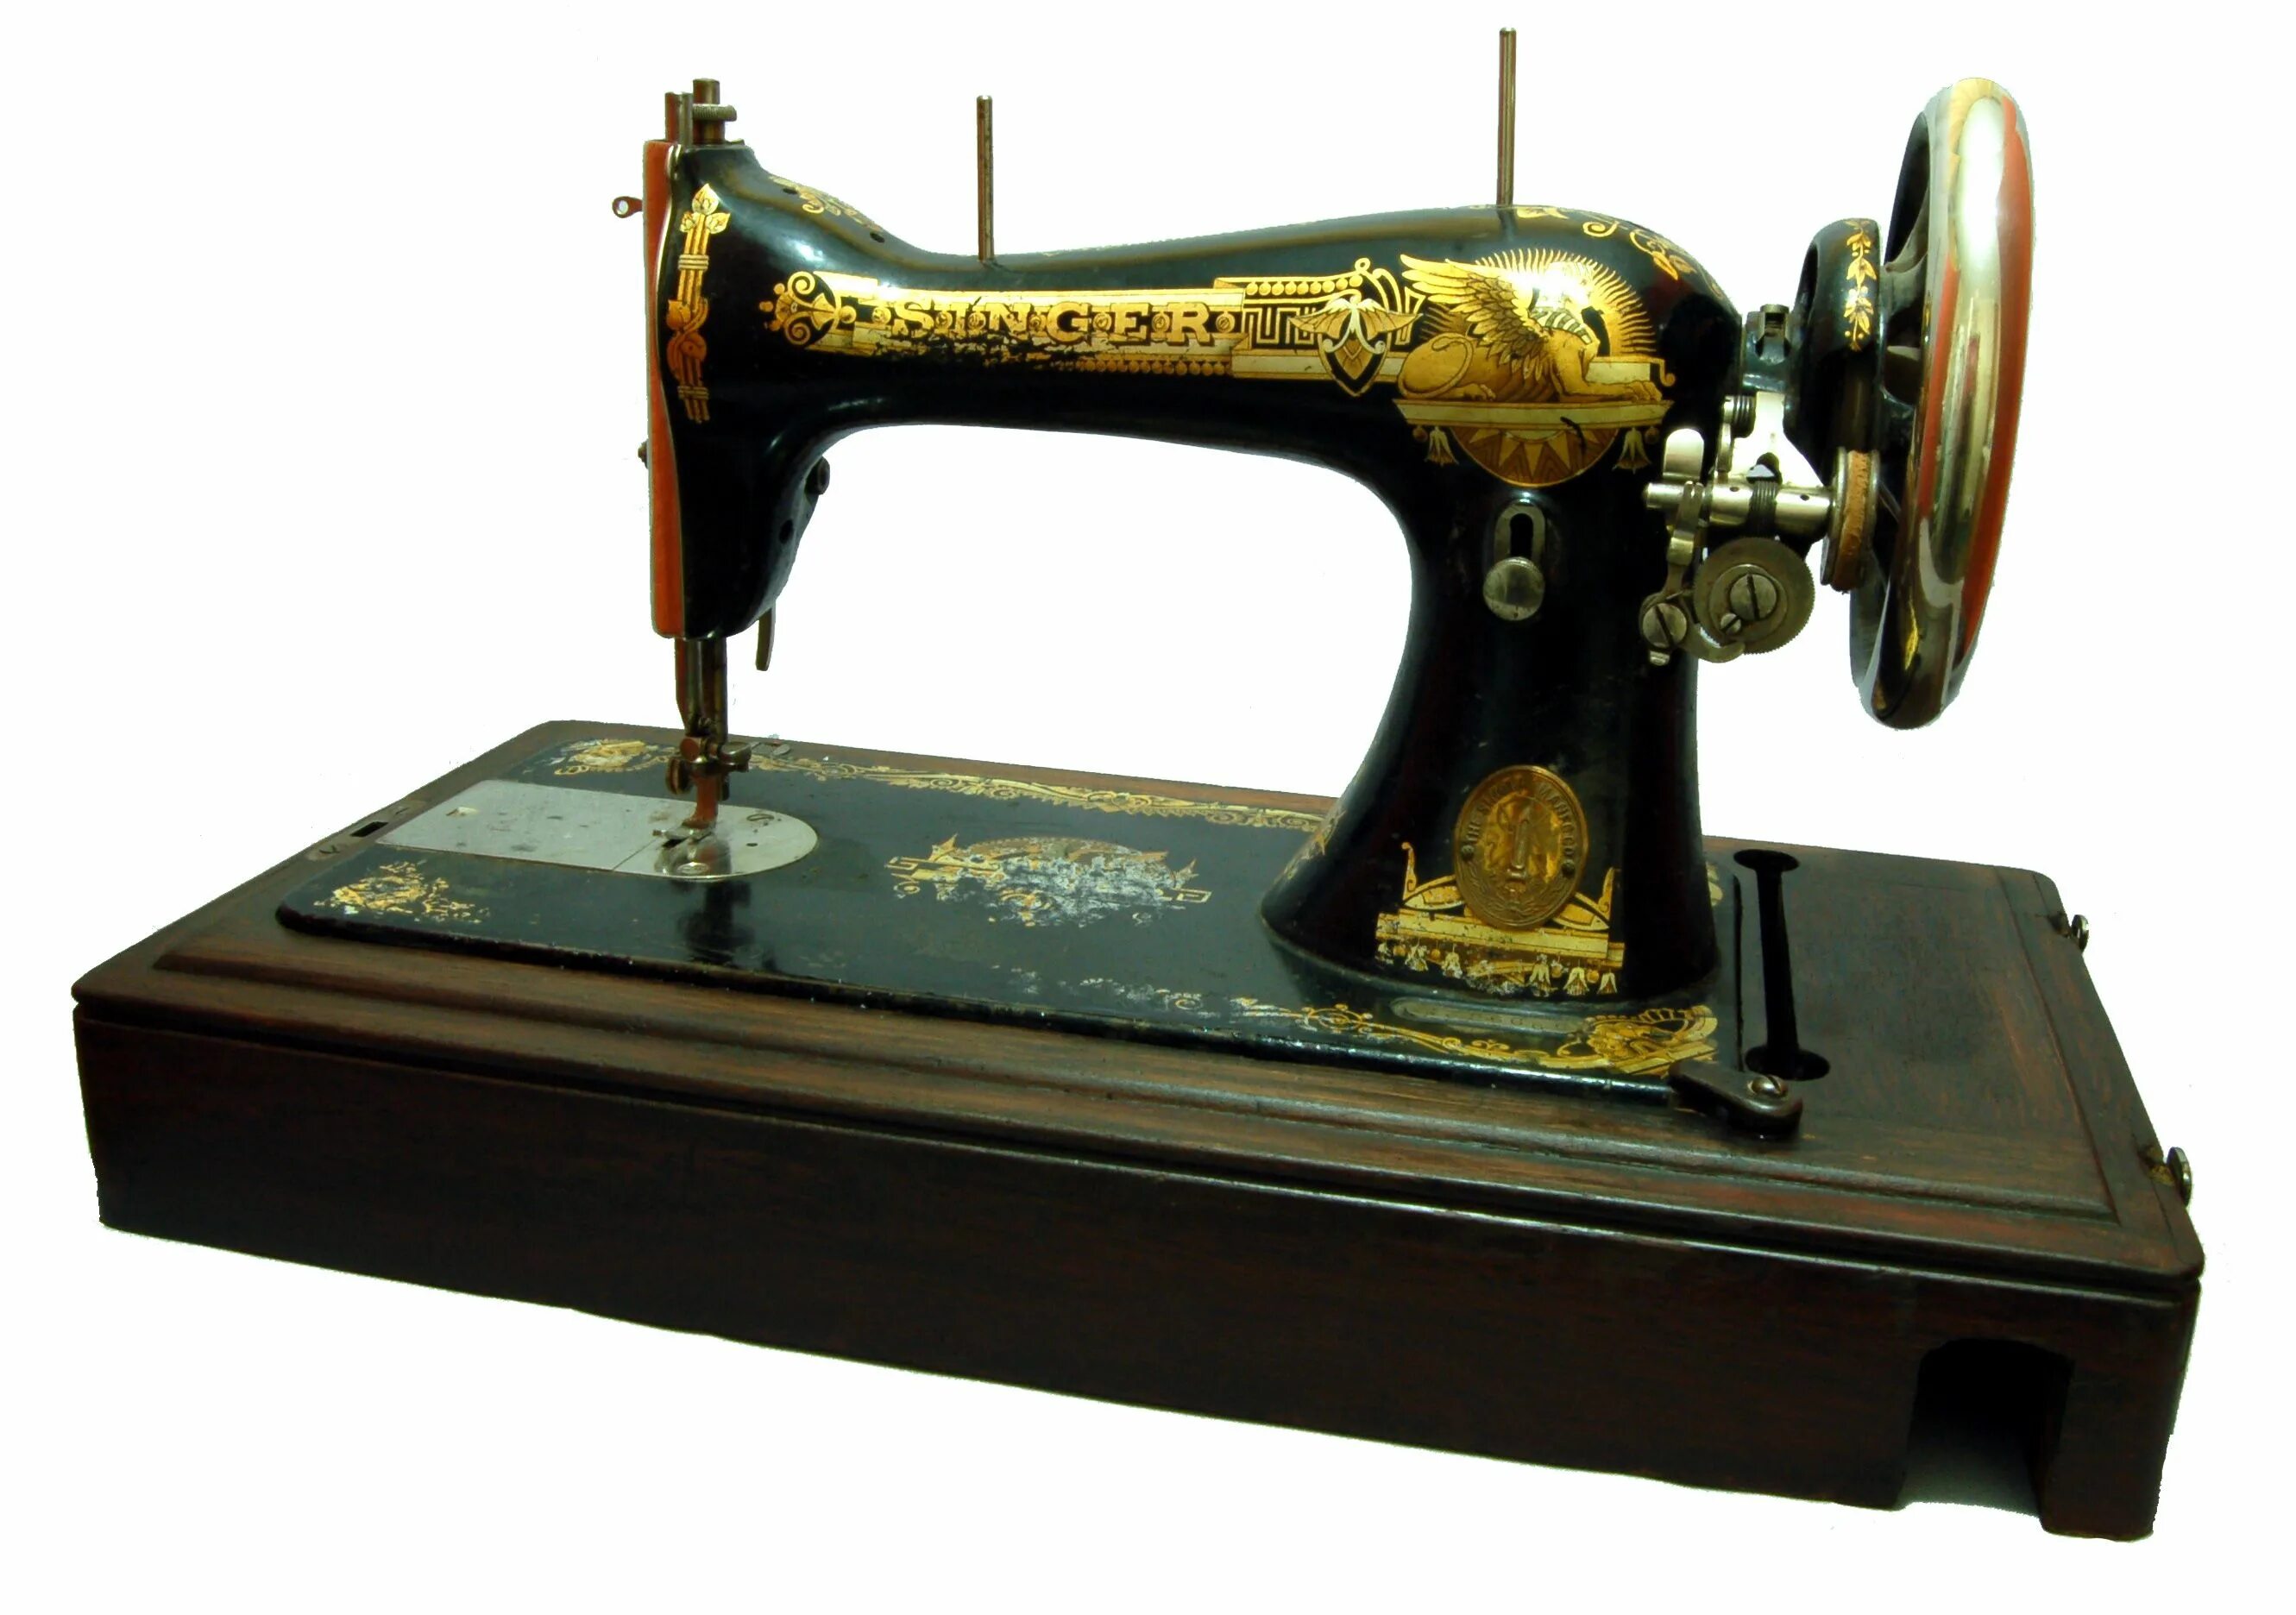 Швейная машинка 18. Швейная машинка Зингер 1886. Зингер швейная машинка 1910 года. Швейная машинка Зингер 1911 года. Швейная машинка Зингер 1886 года.